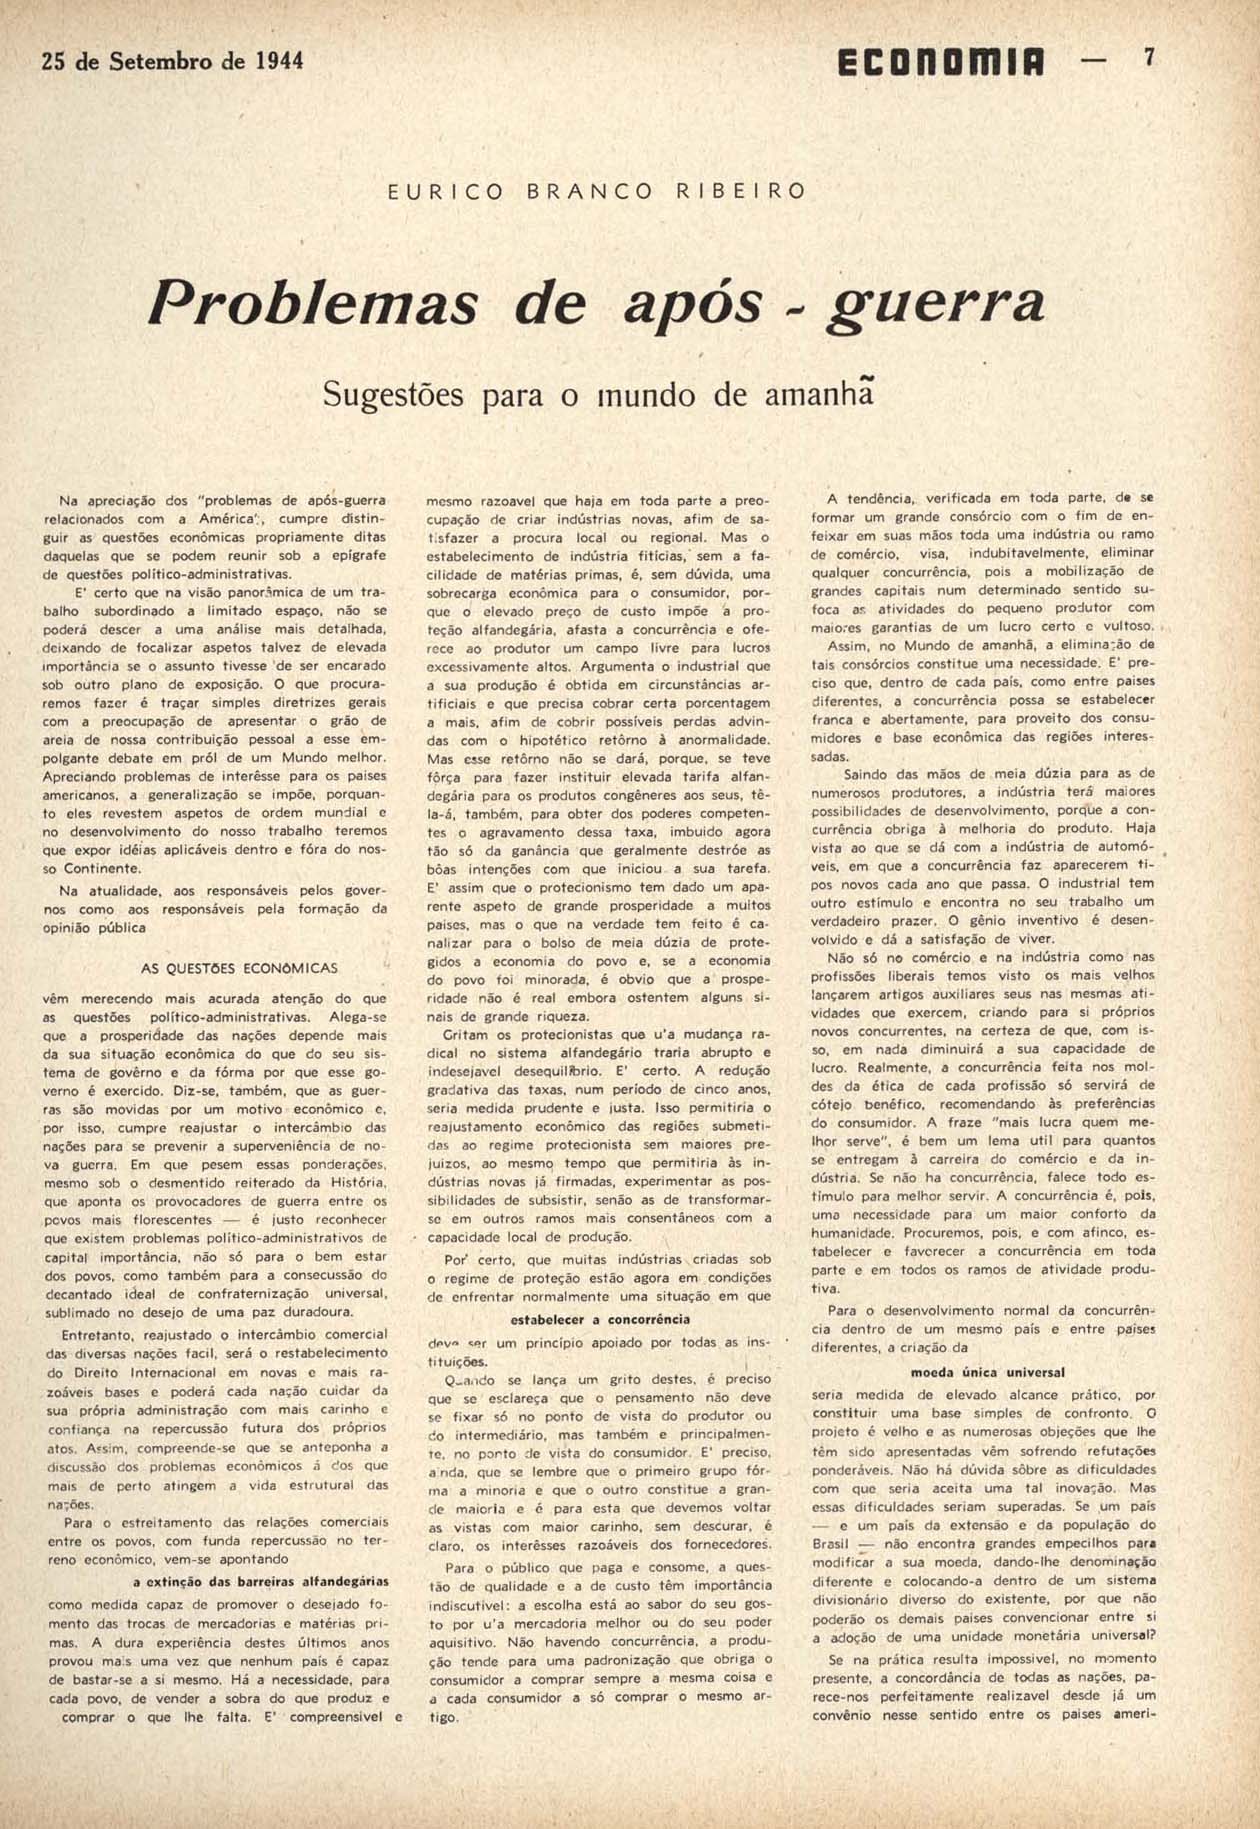 RIBEIRO, Eurico Branco. Problemas de após-guerra: sugestões para o mundo de amanhã. Economia, Rio de Janeiro, n. 64, p. 7-12, set. 1944.